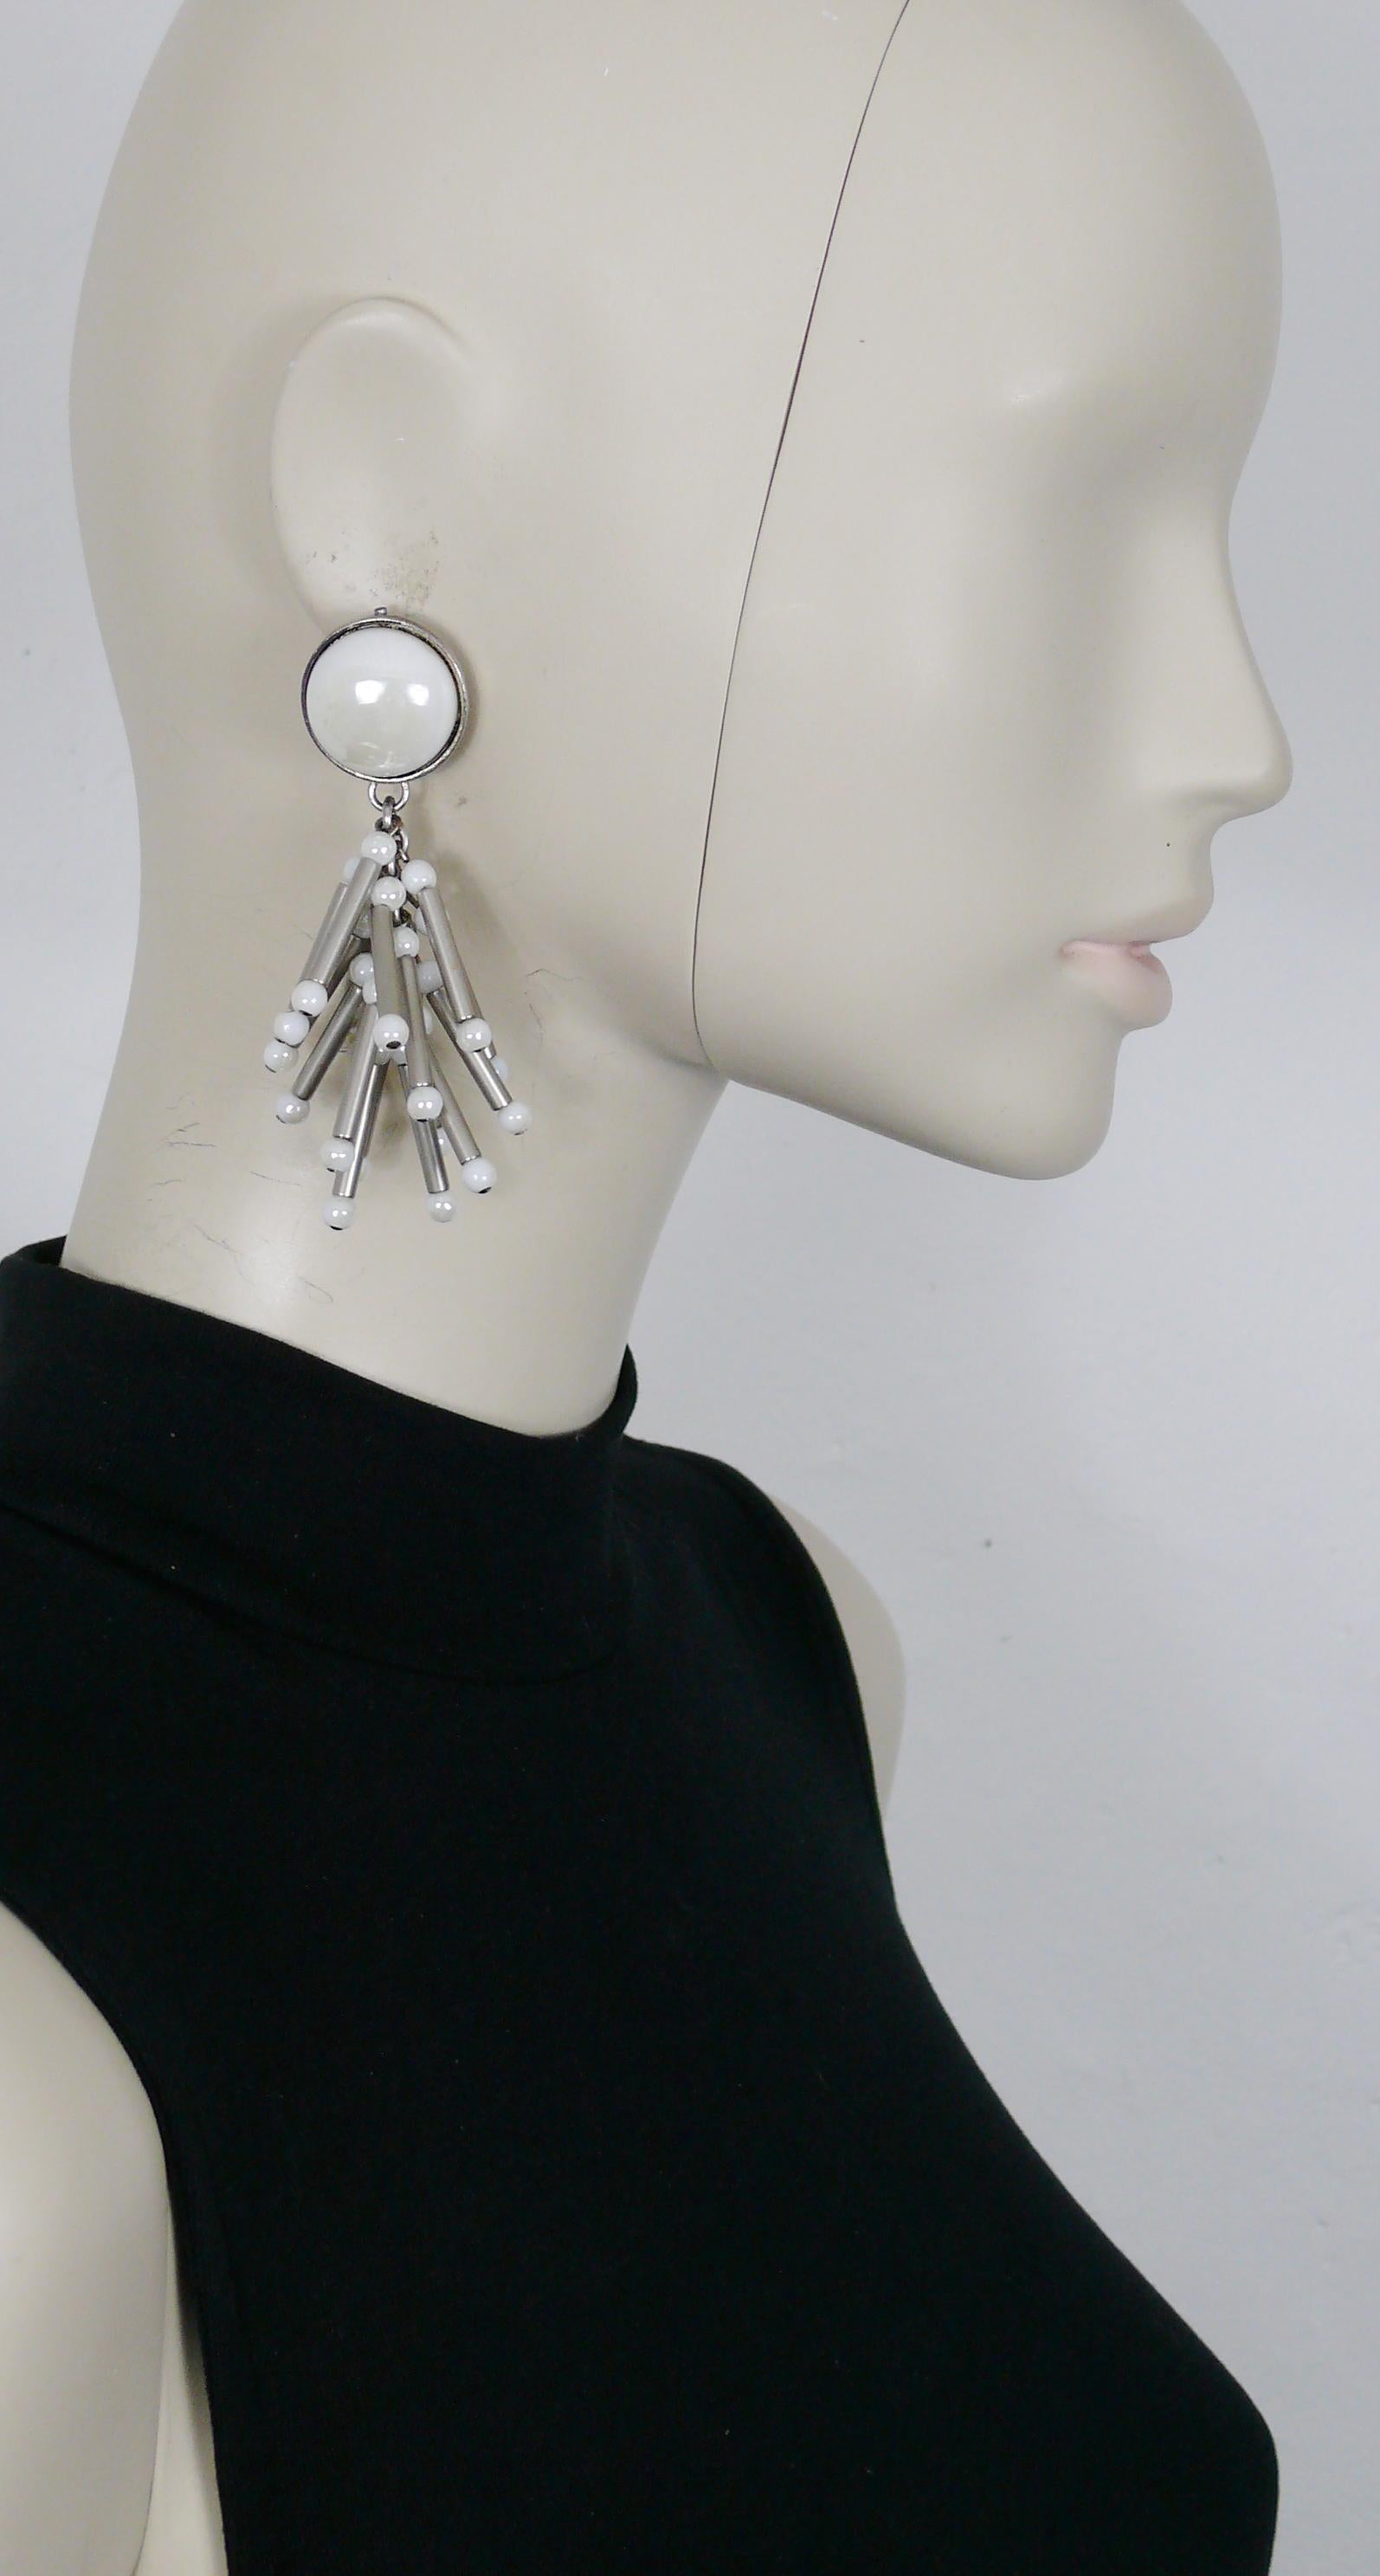 Boucles d'oreilles pendantes PACO RABANNE en argent vieilli (clip-on) avec des breloques tubulaires embellies de perles en verre blanc et surmontées d'un grand cabochon en verre blanc.

Matériel métallique de couleur argentée.
Patine